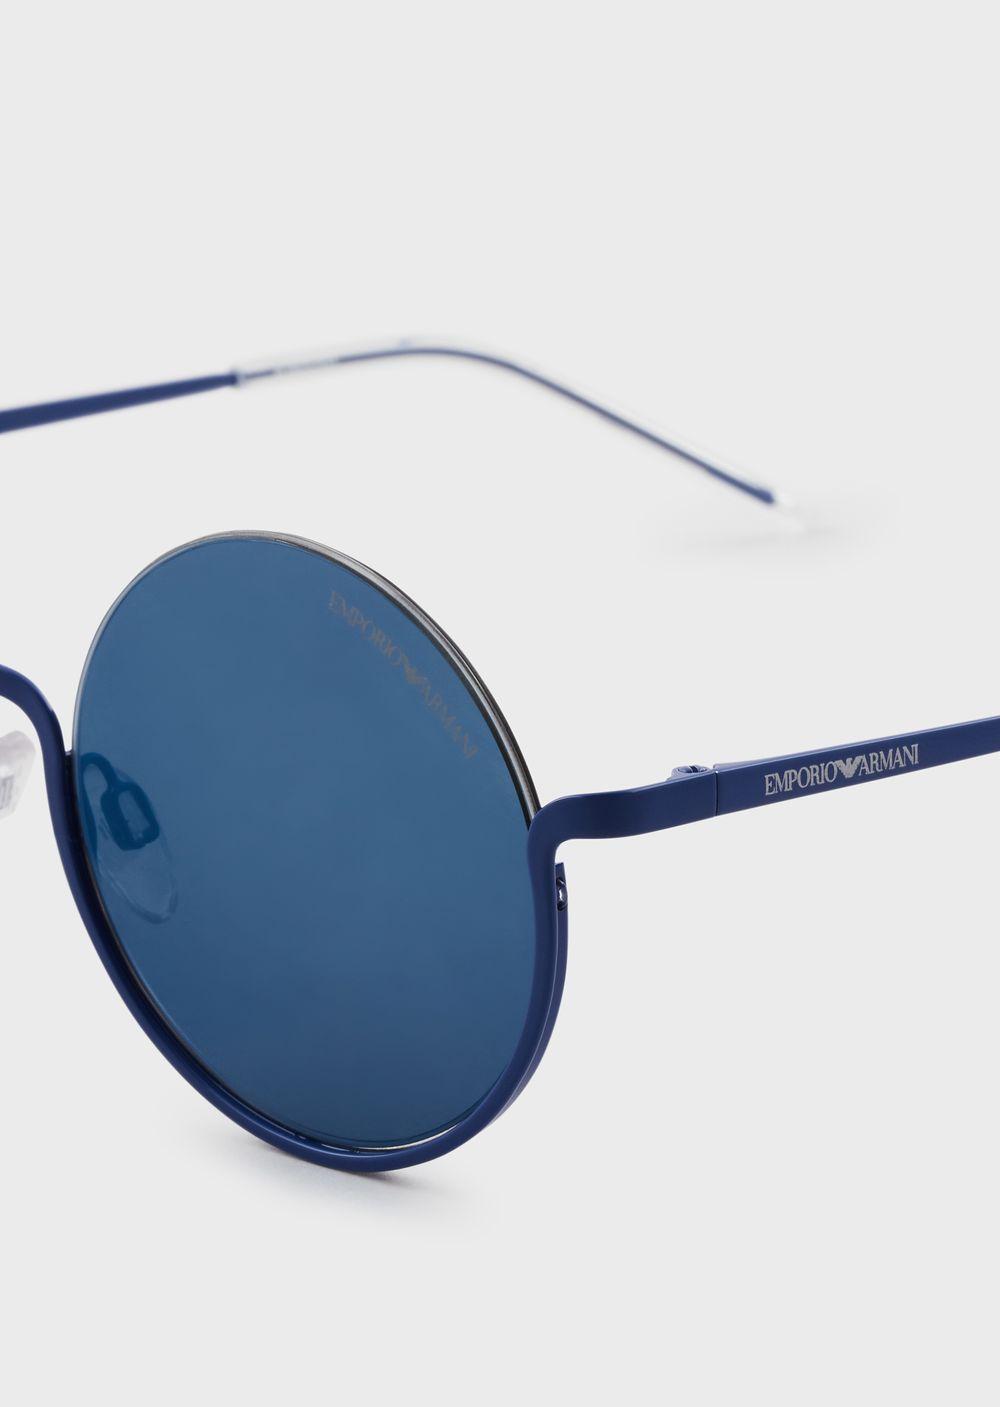 Emporio Armani Round Woman Sunglasses in Blue - Lyst